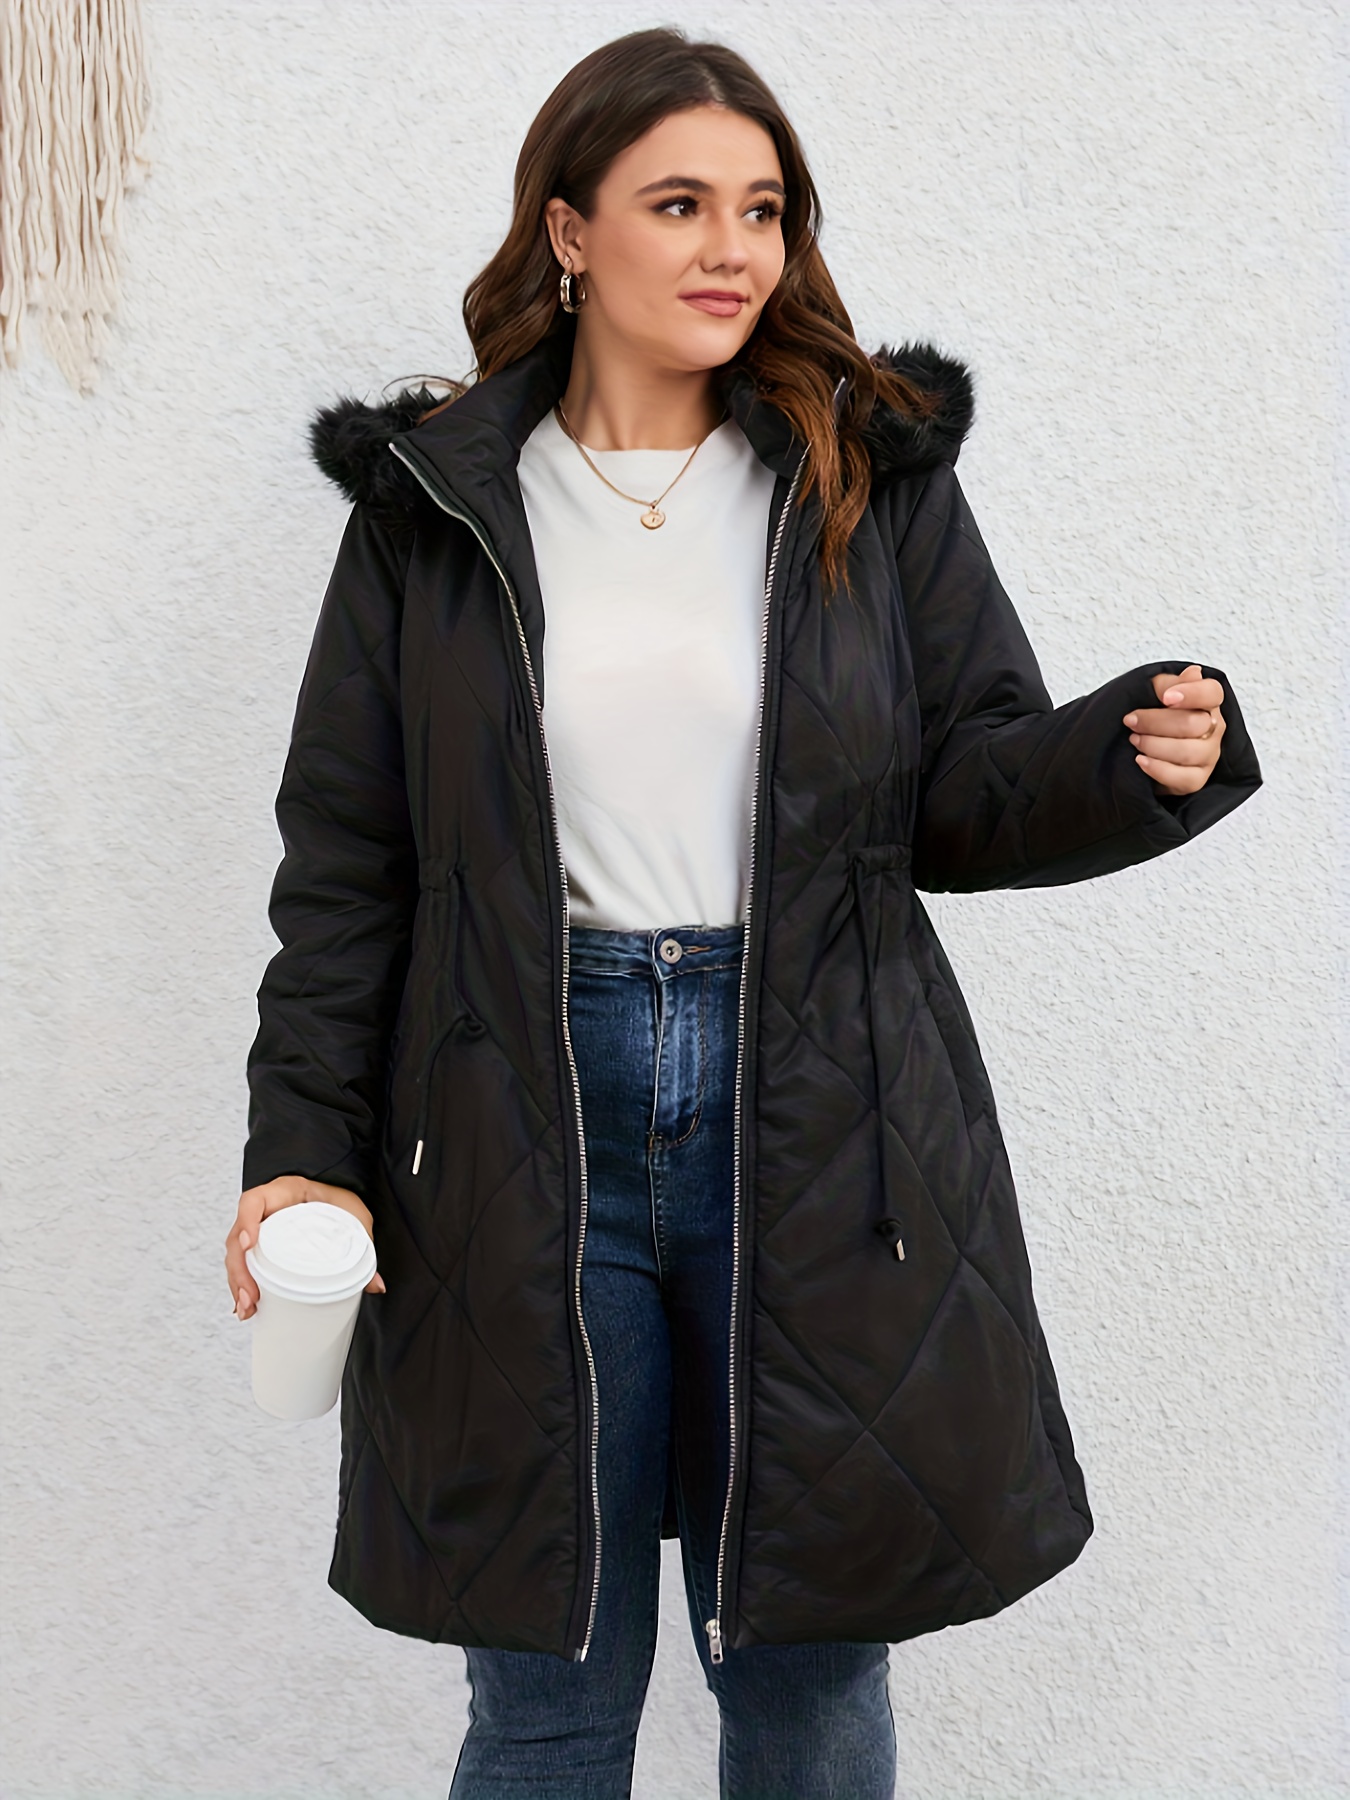 Plus Size Winter Coats, Plus Size Womens Winter Coats